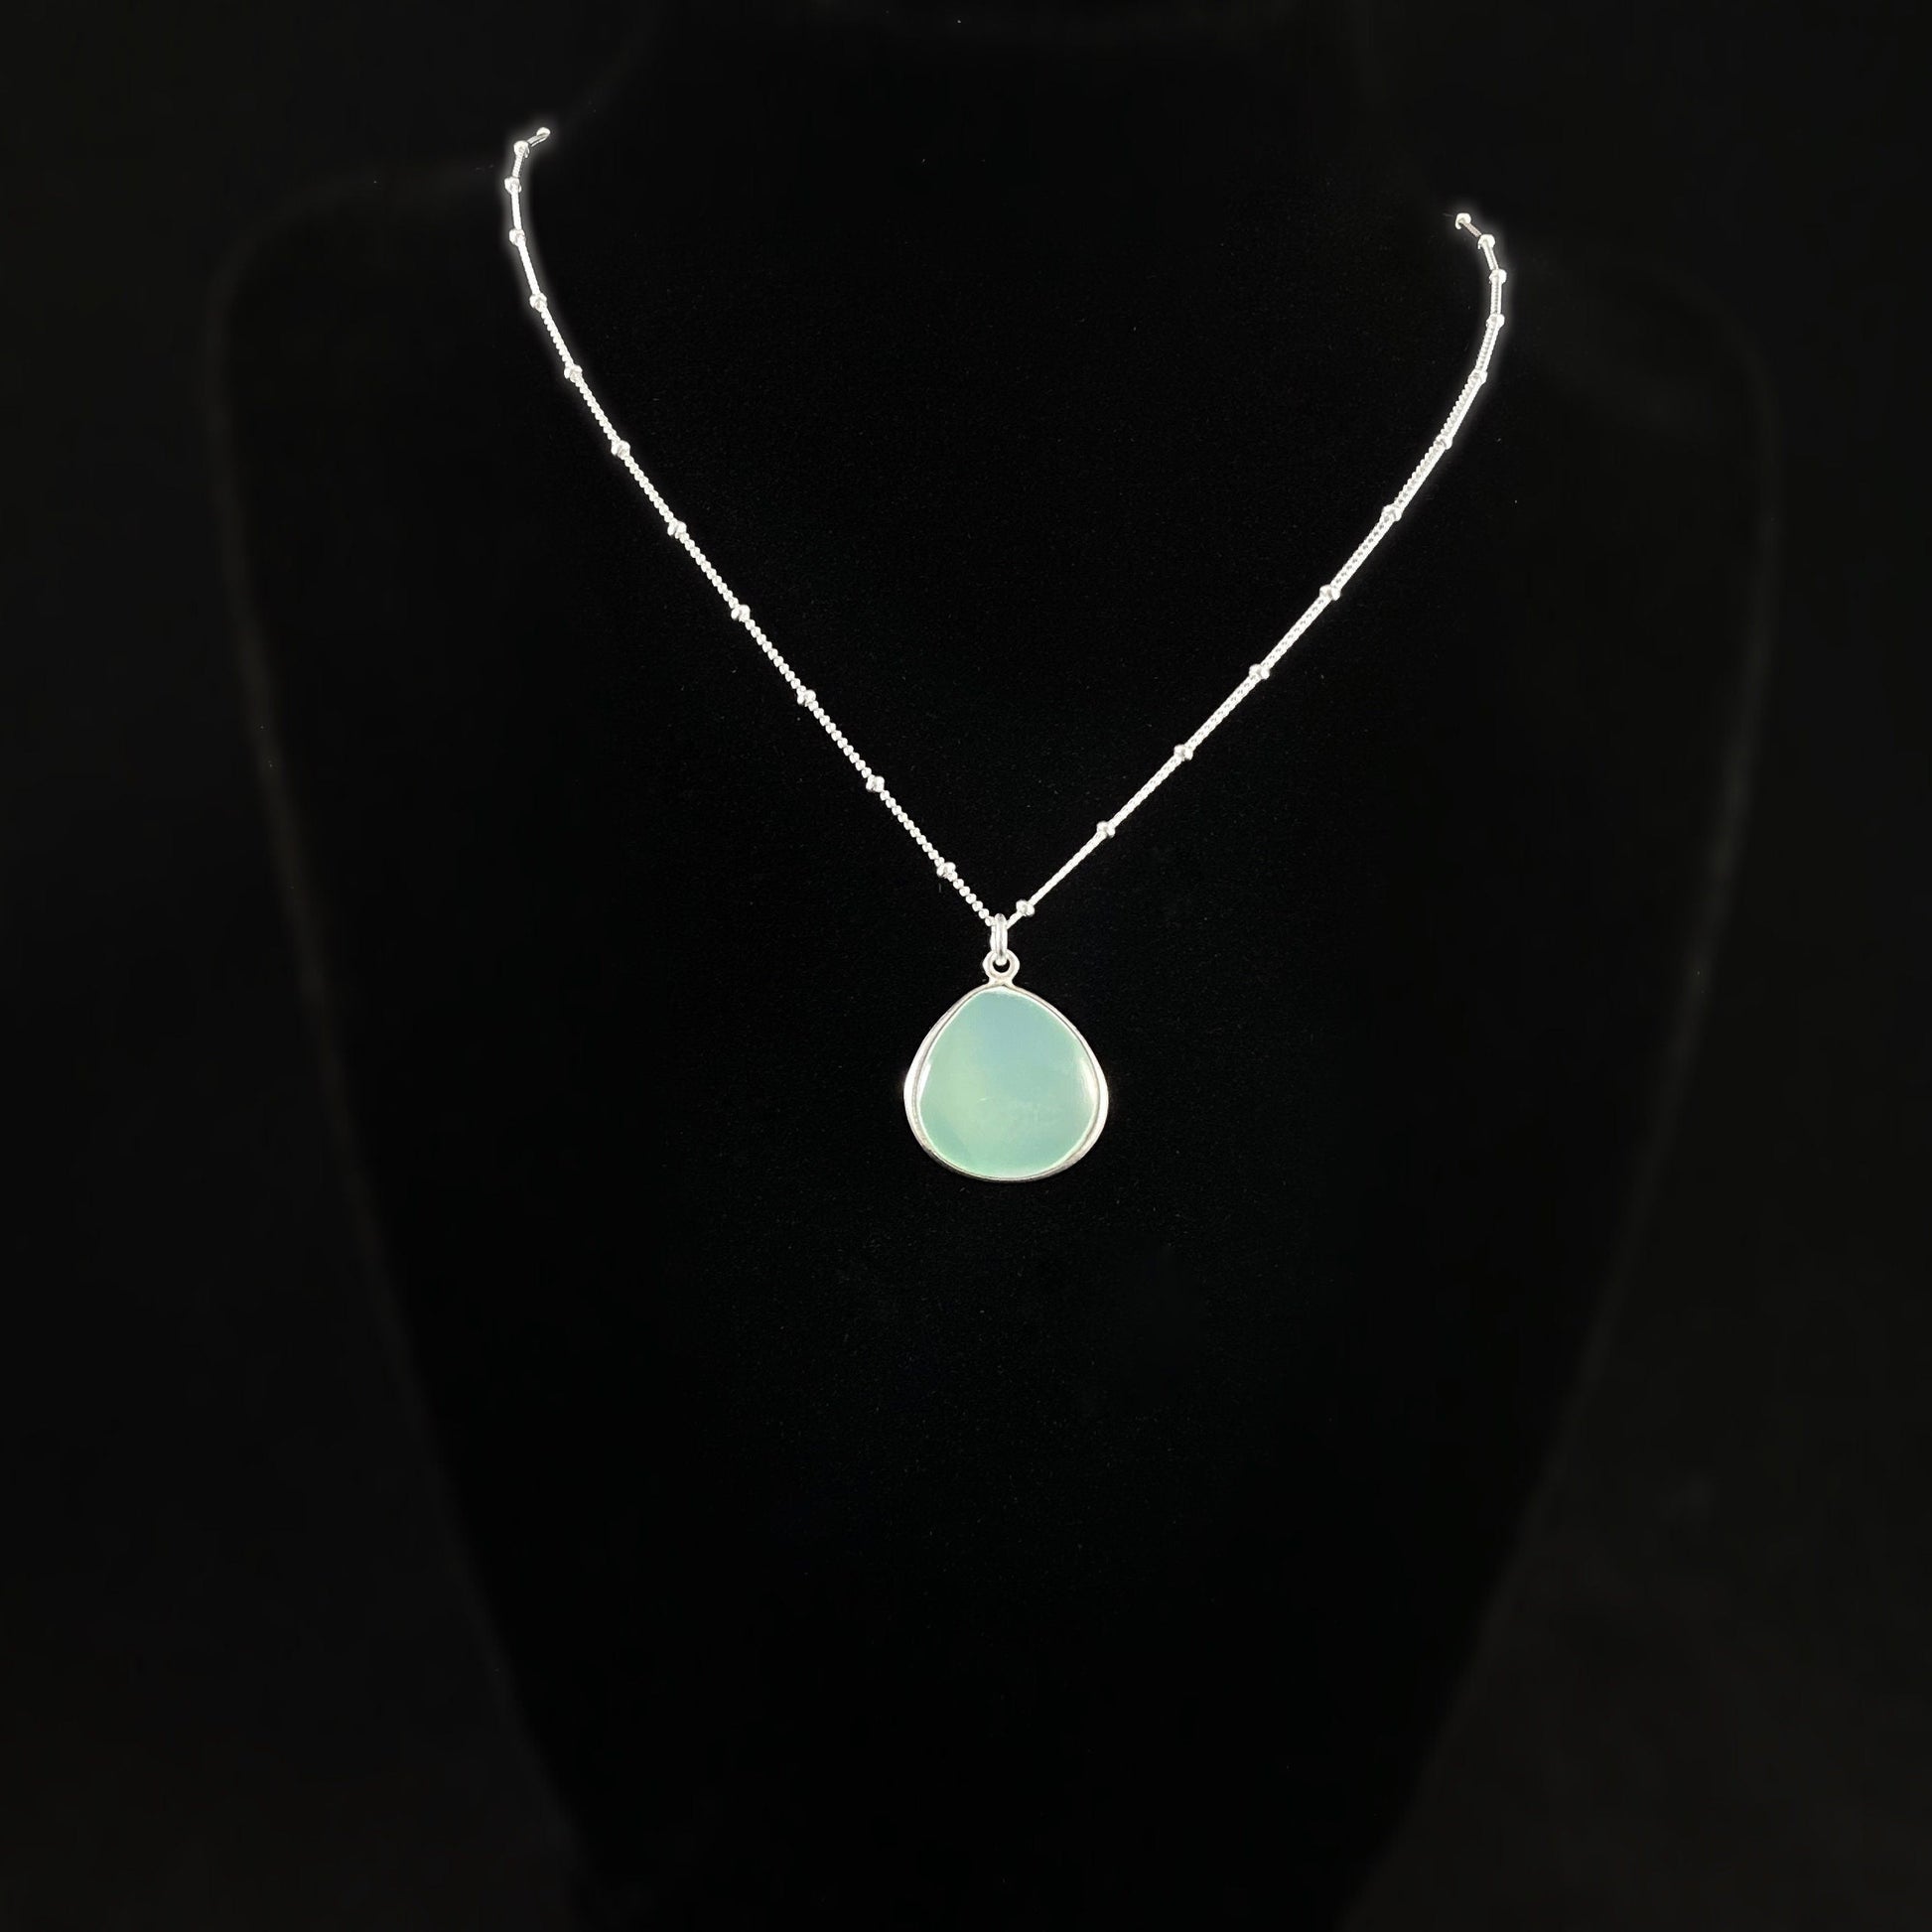 Aqua Chalcedony Quartz Wide Teardrop Necklace - Gemstone Jewelry Made in USA